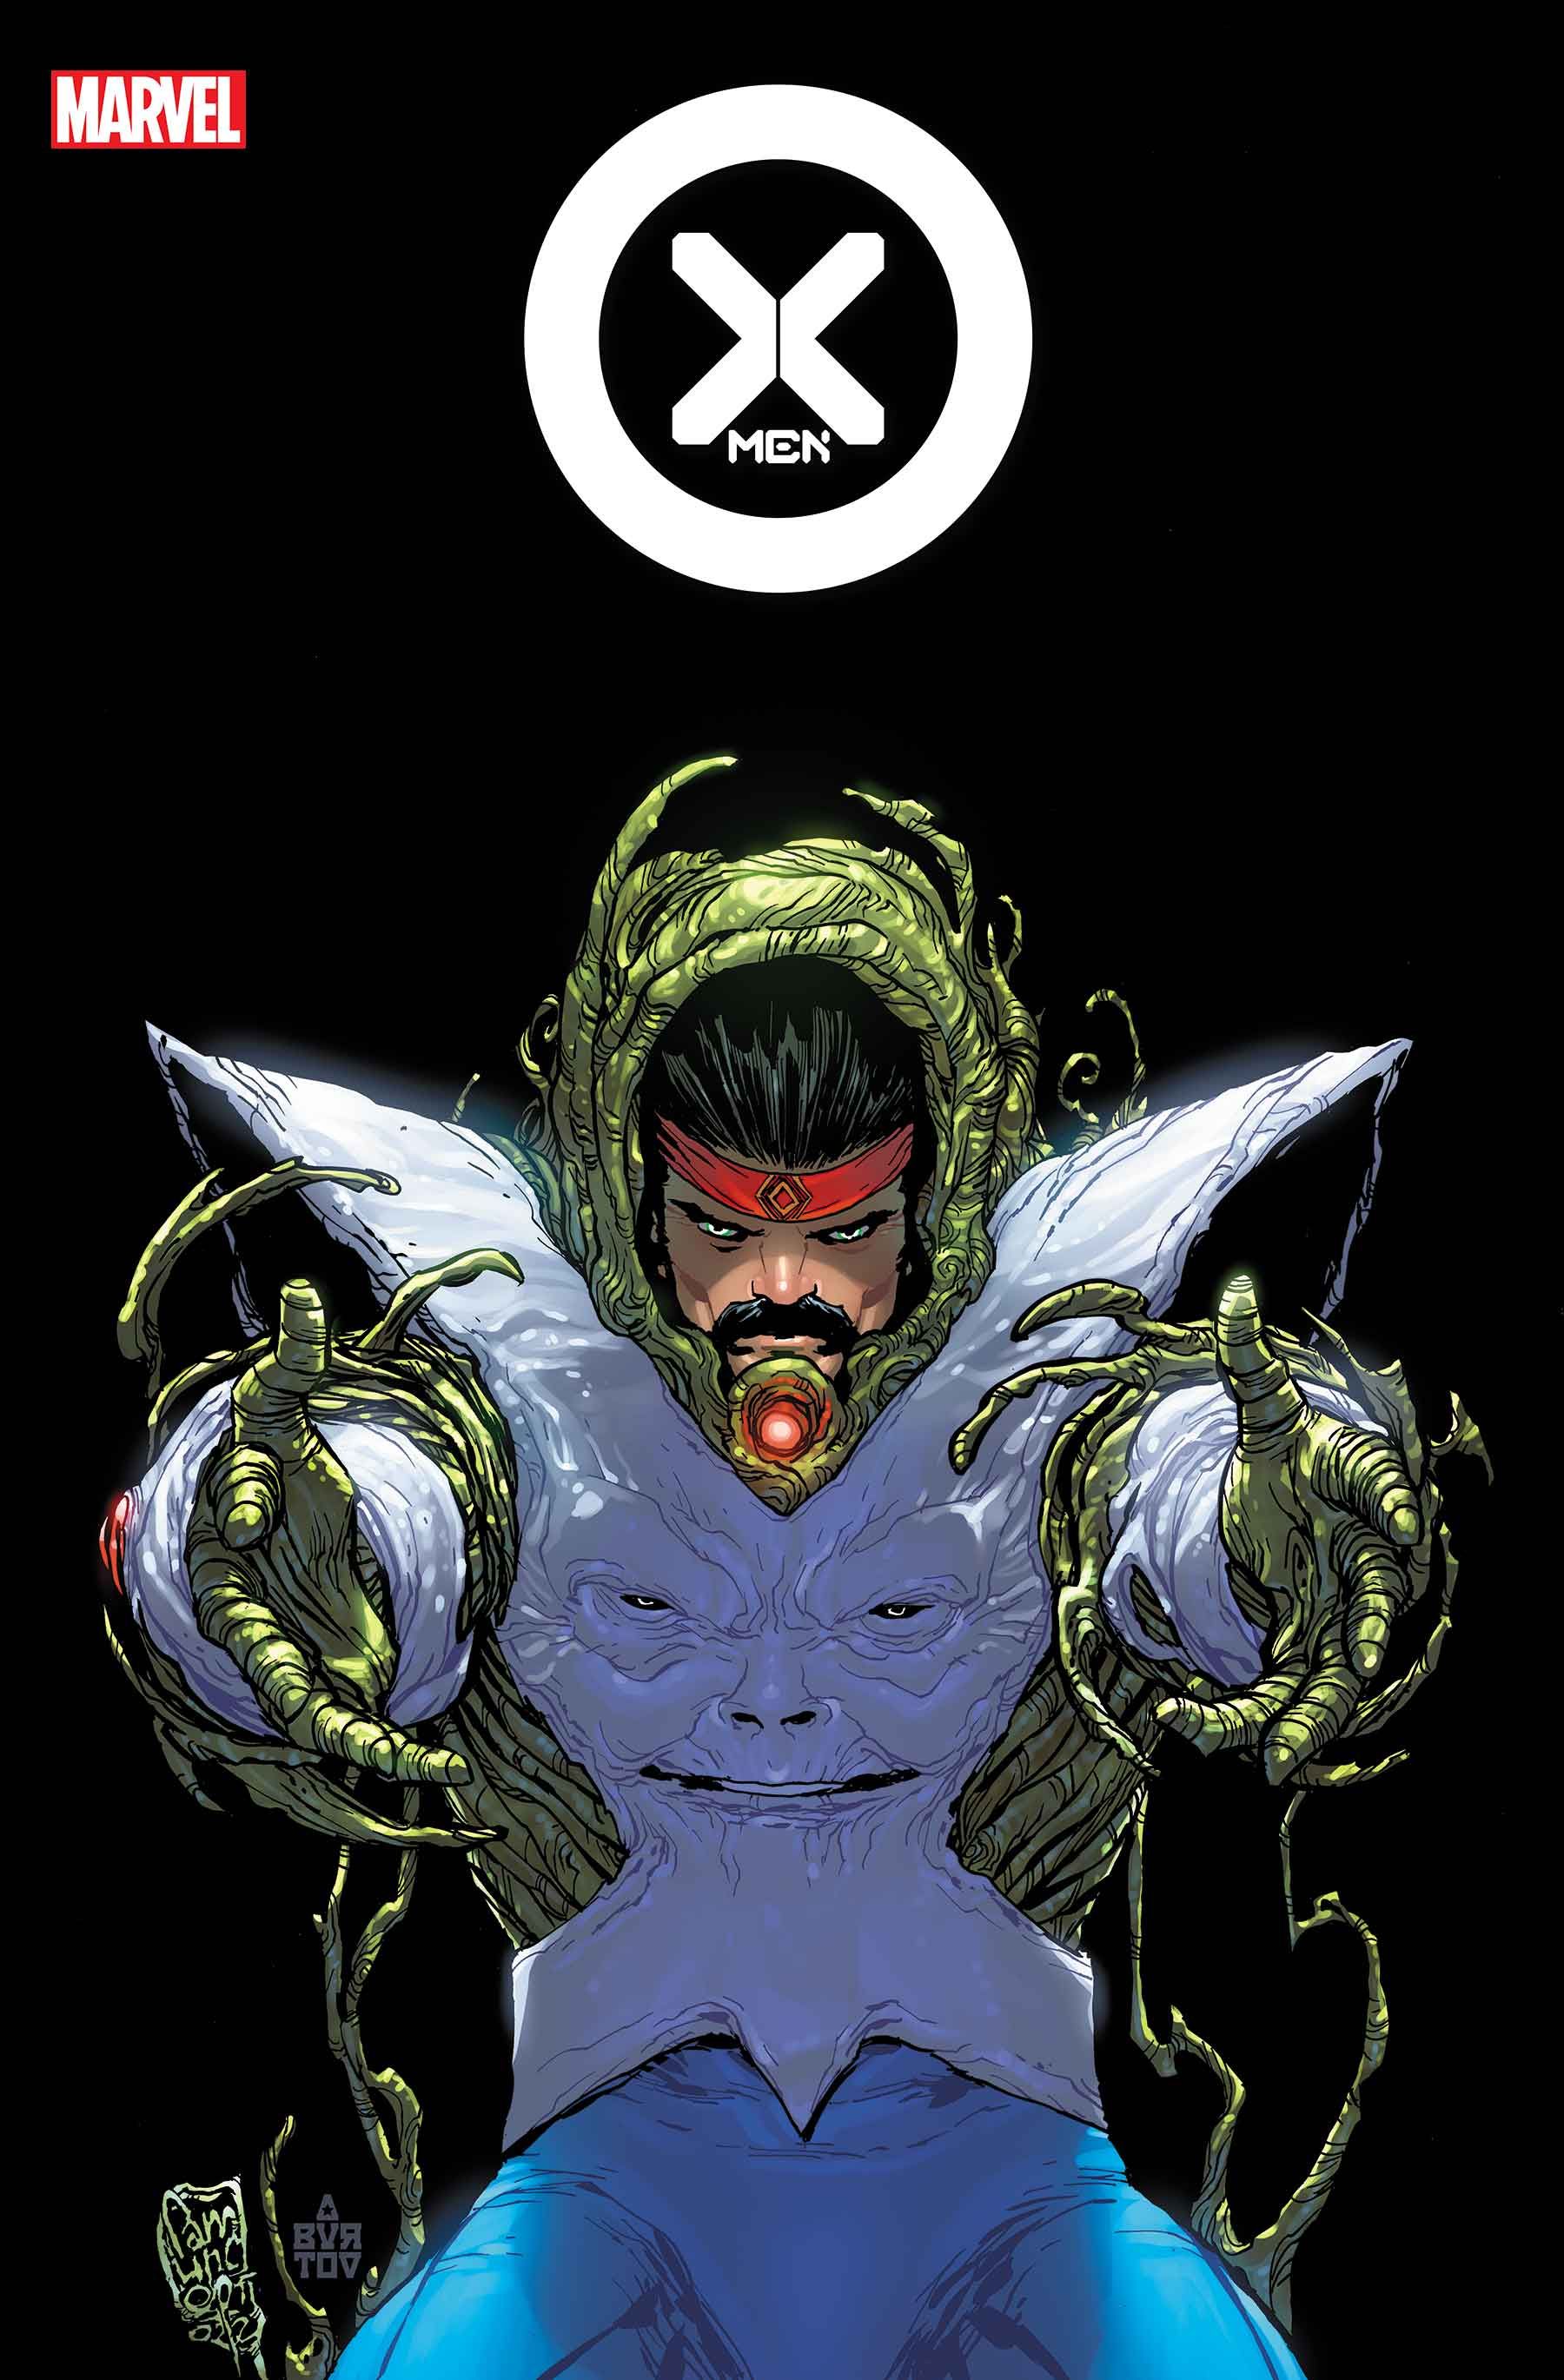 X-Men #16 cover